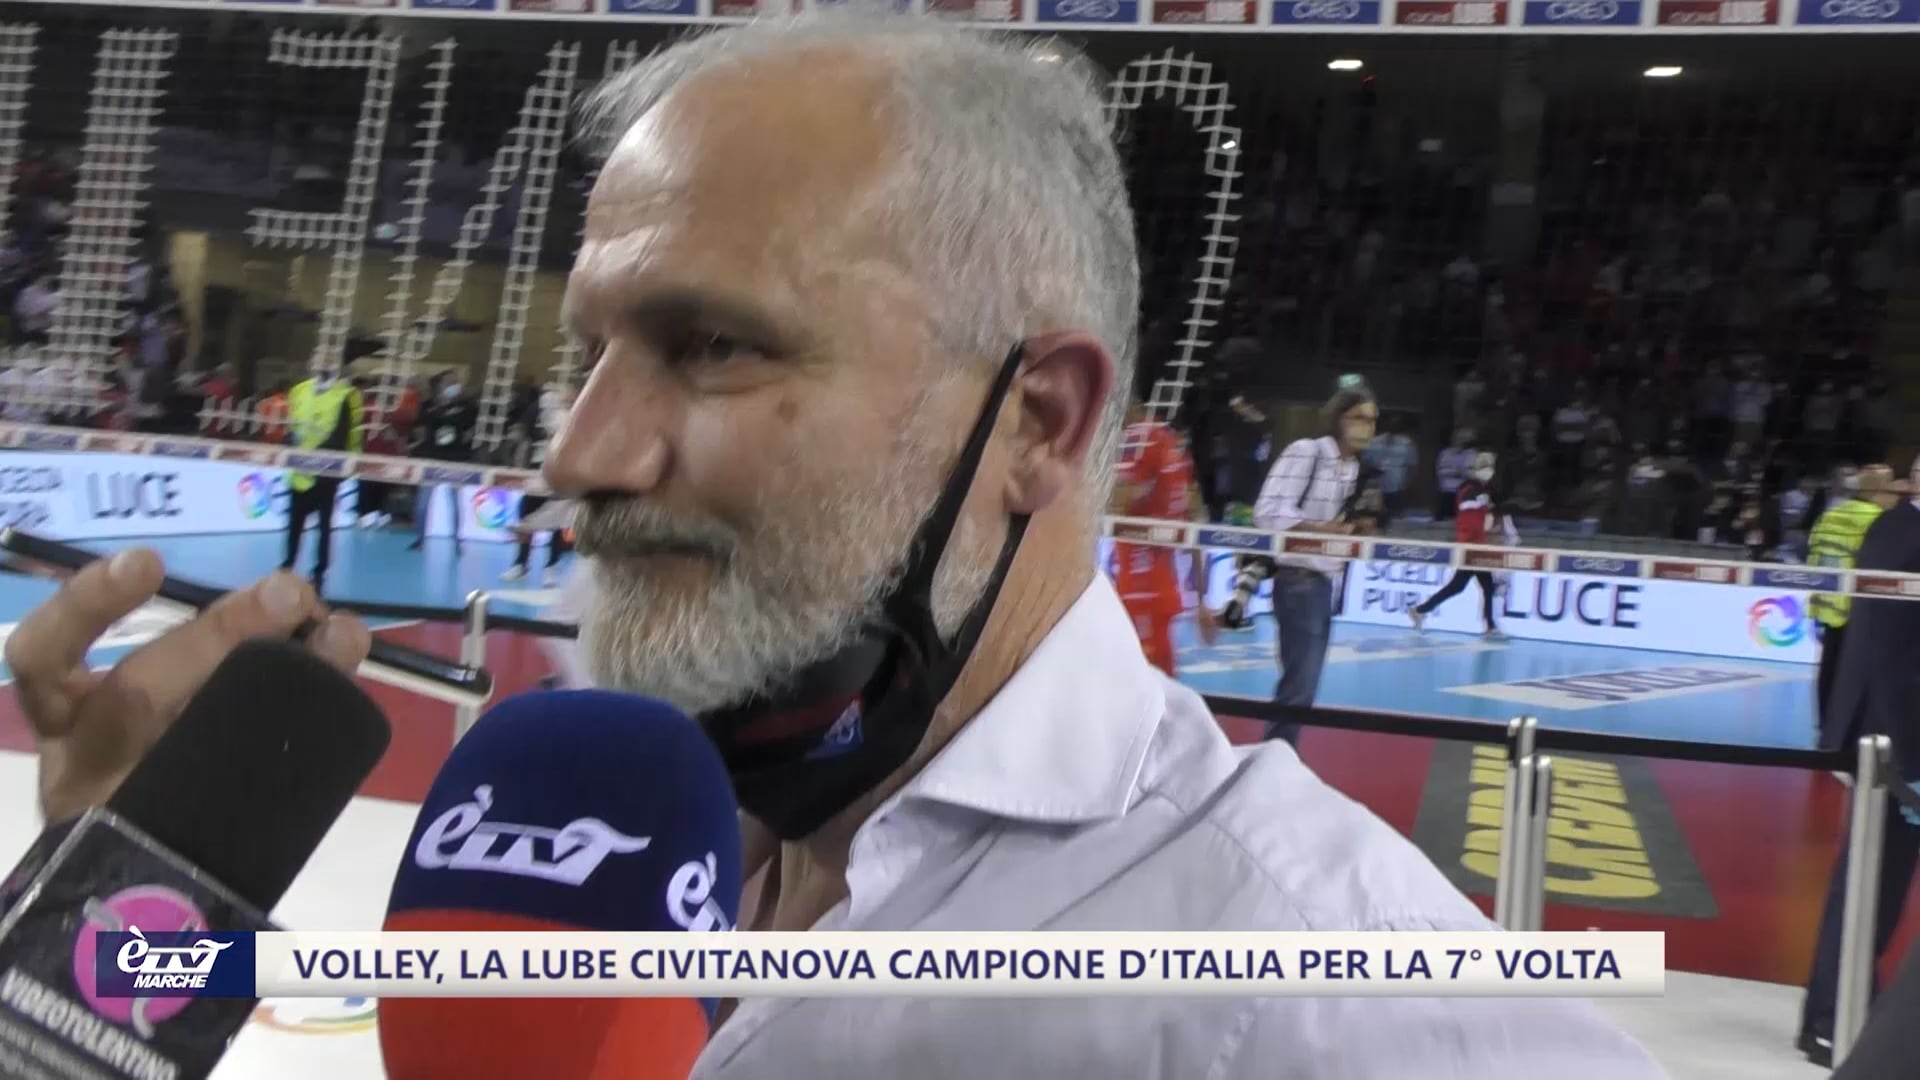 Volley, la Lube Civitanova Campione d’Italia per la 7° volta